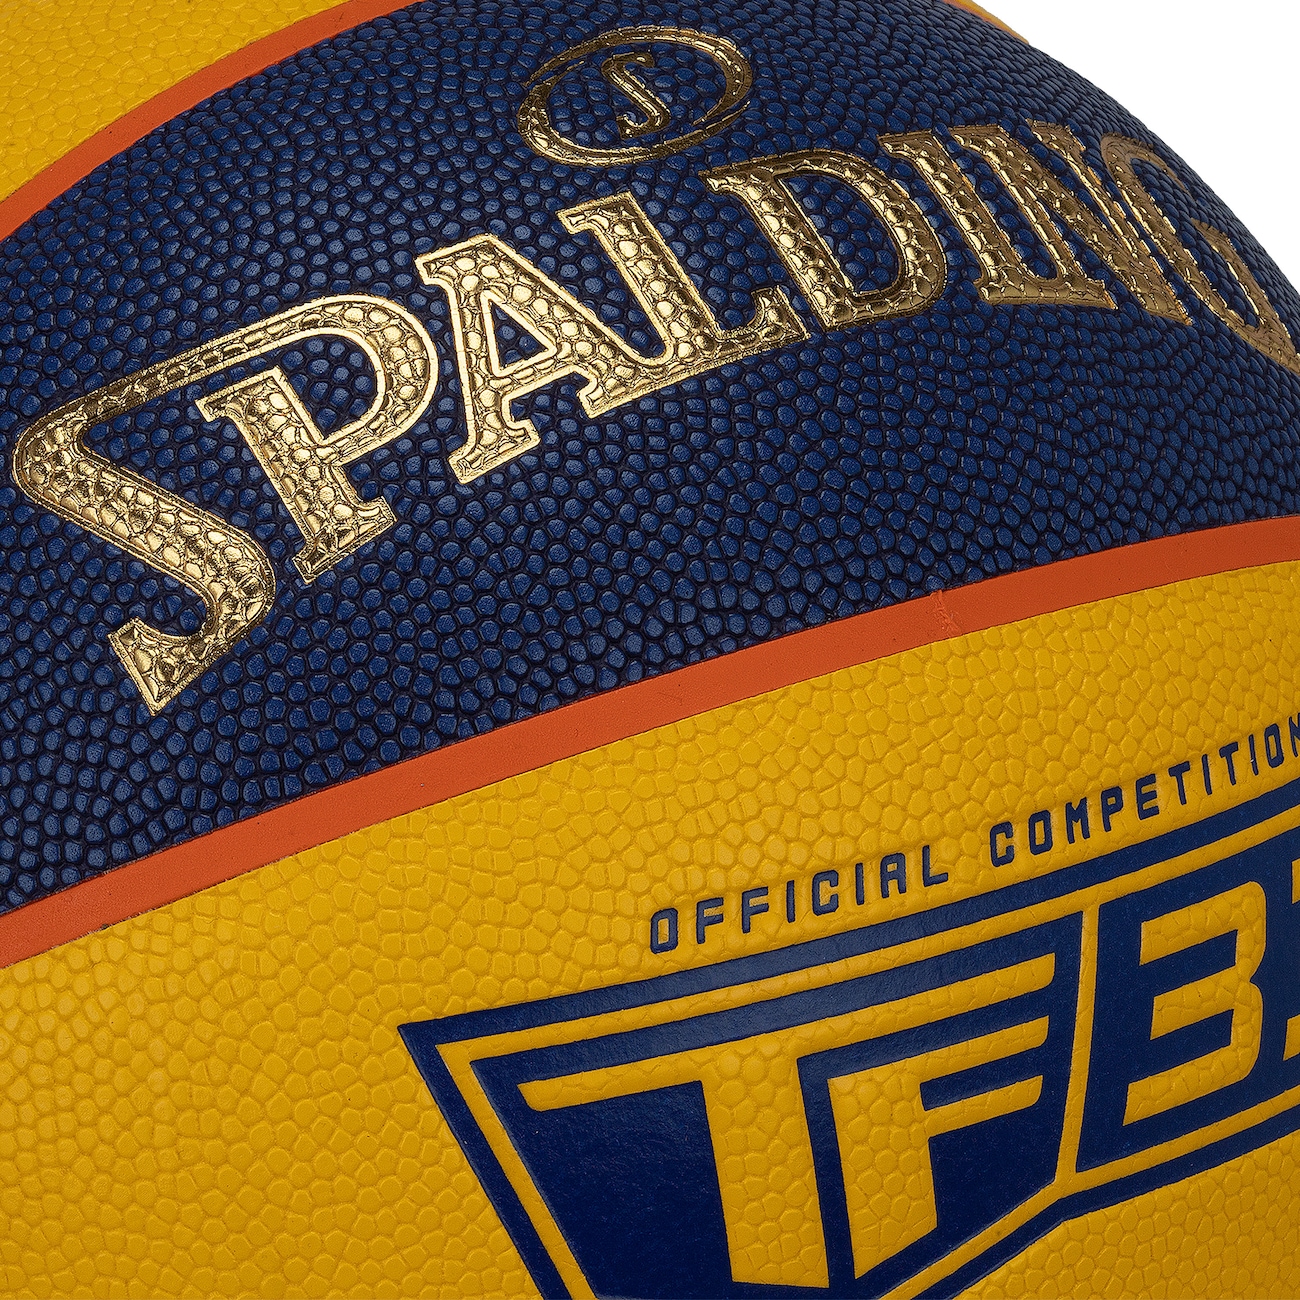 Bola de Basquete Spalding 3X3 TF-33 FIBA Microfibra #6